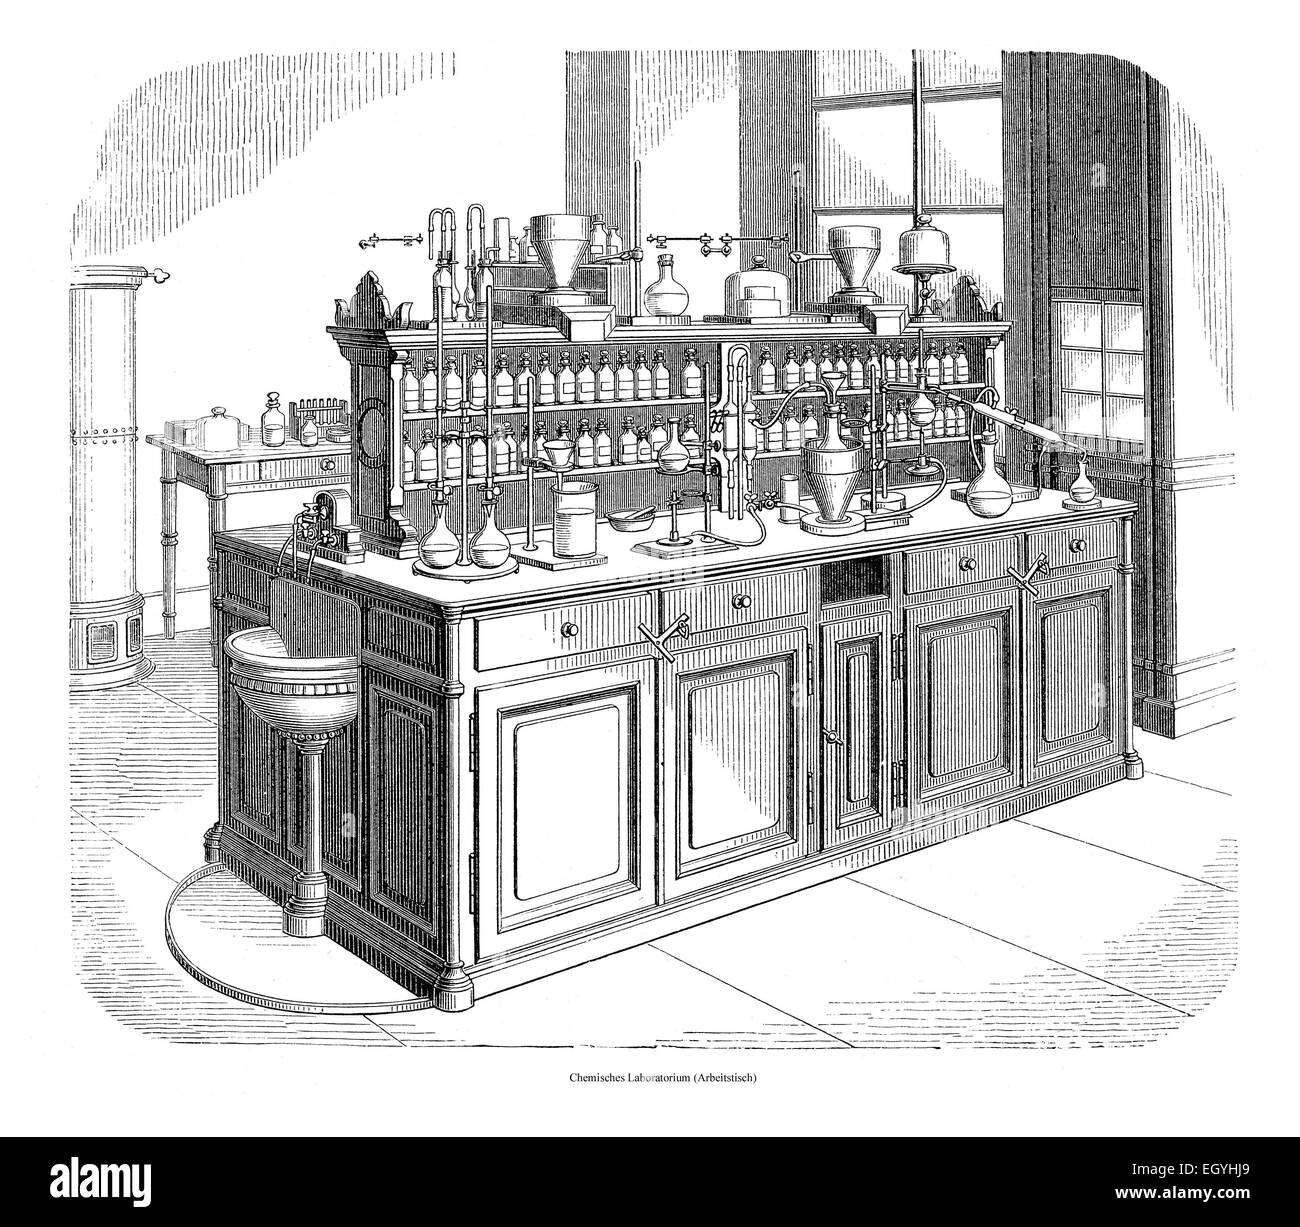 Chemisches Laboratorium, Arbeitstisch, Abbildung aus Meyers Lexikon, 1897 Stockfoto